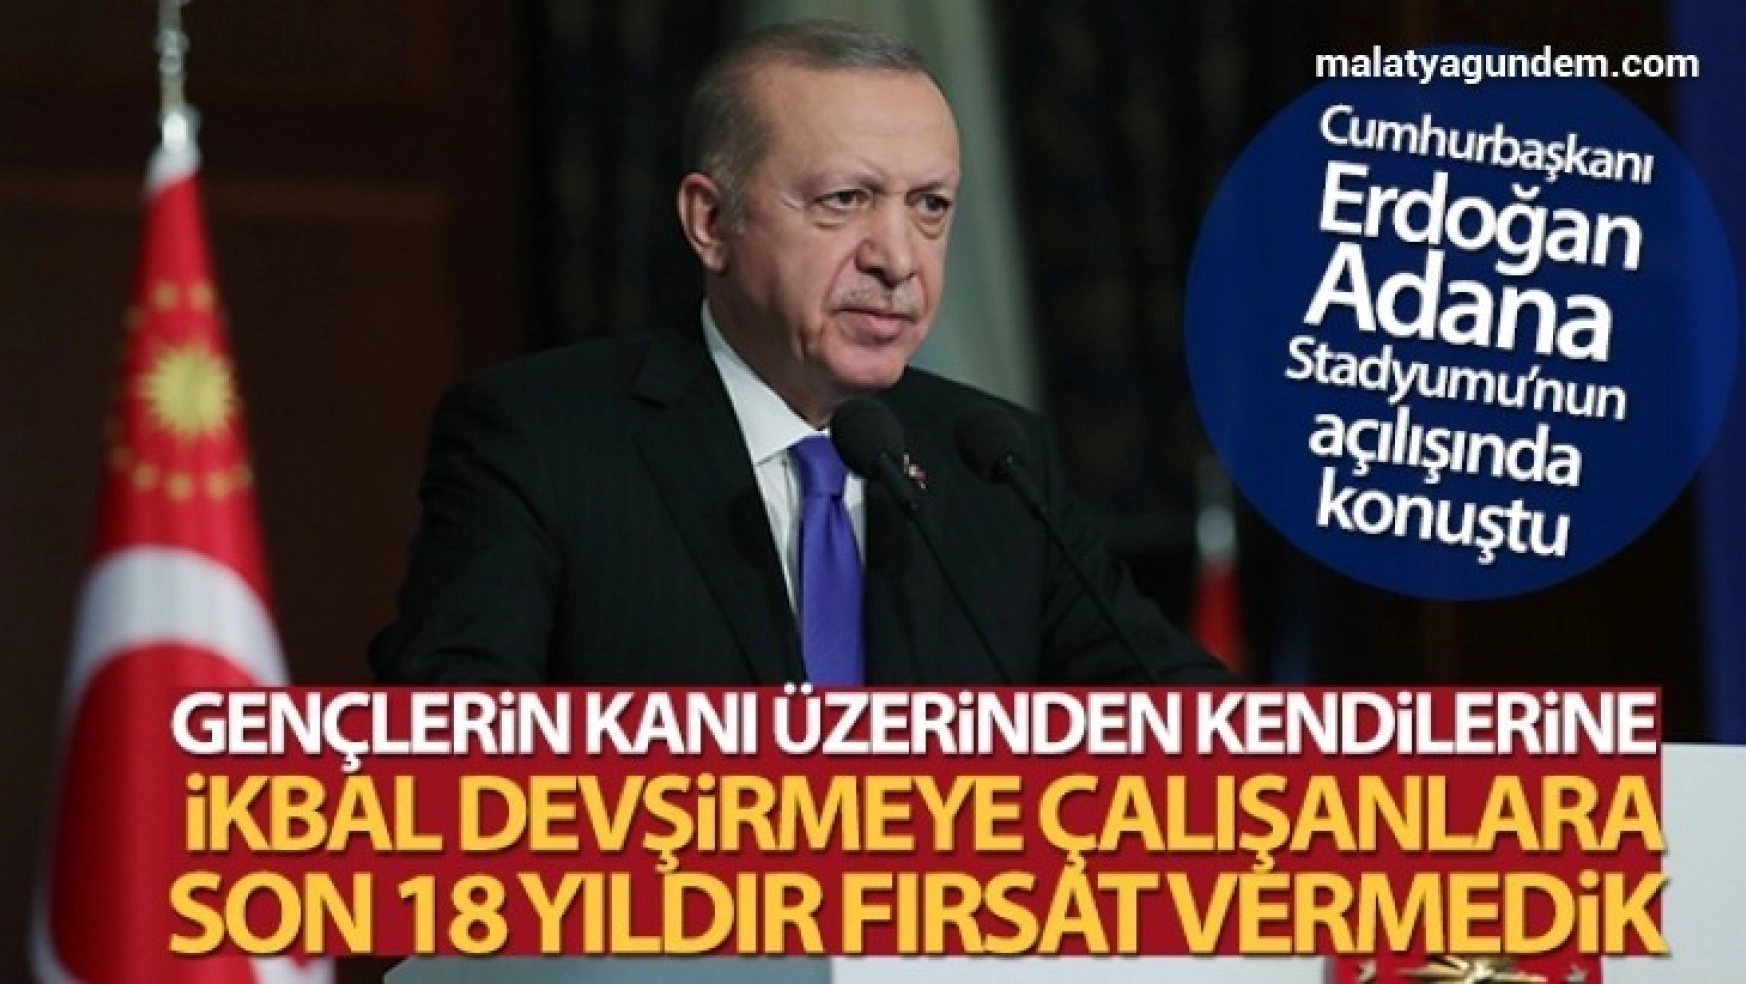 Cumhurbaşkanı Erdoğan, Adana Stadyumu'nun açılışında konuştu